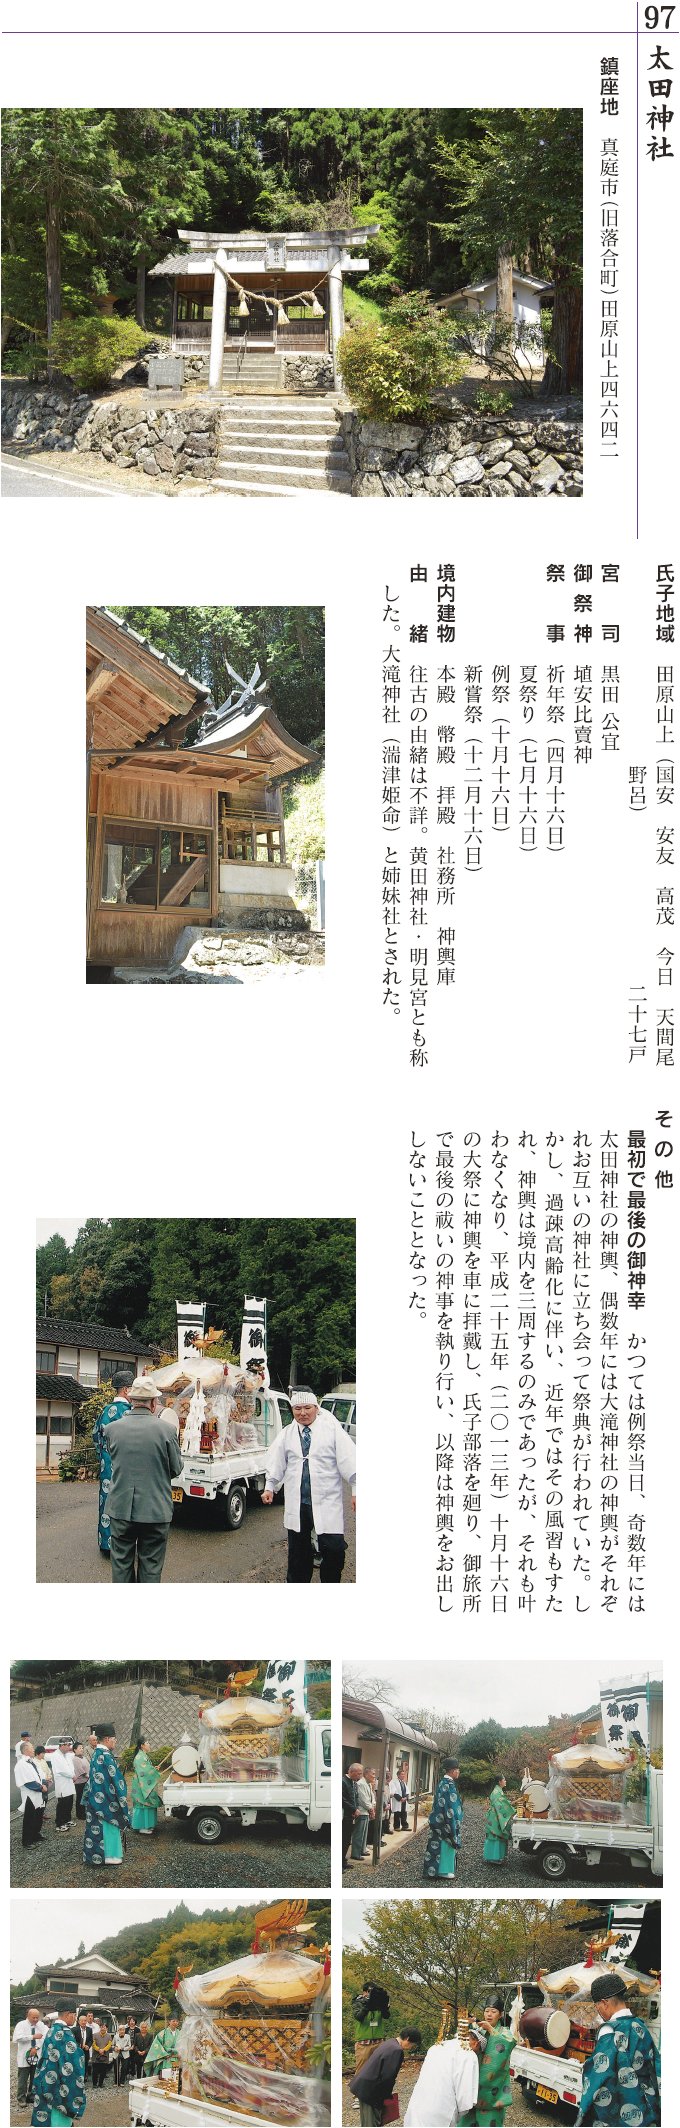 97 大田神社